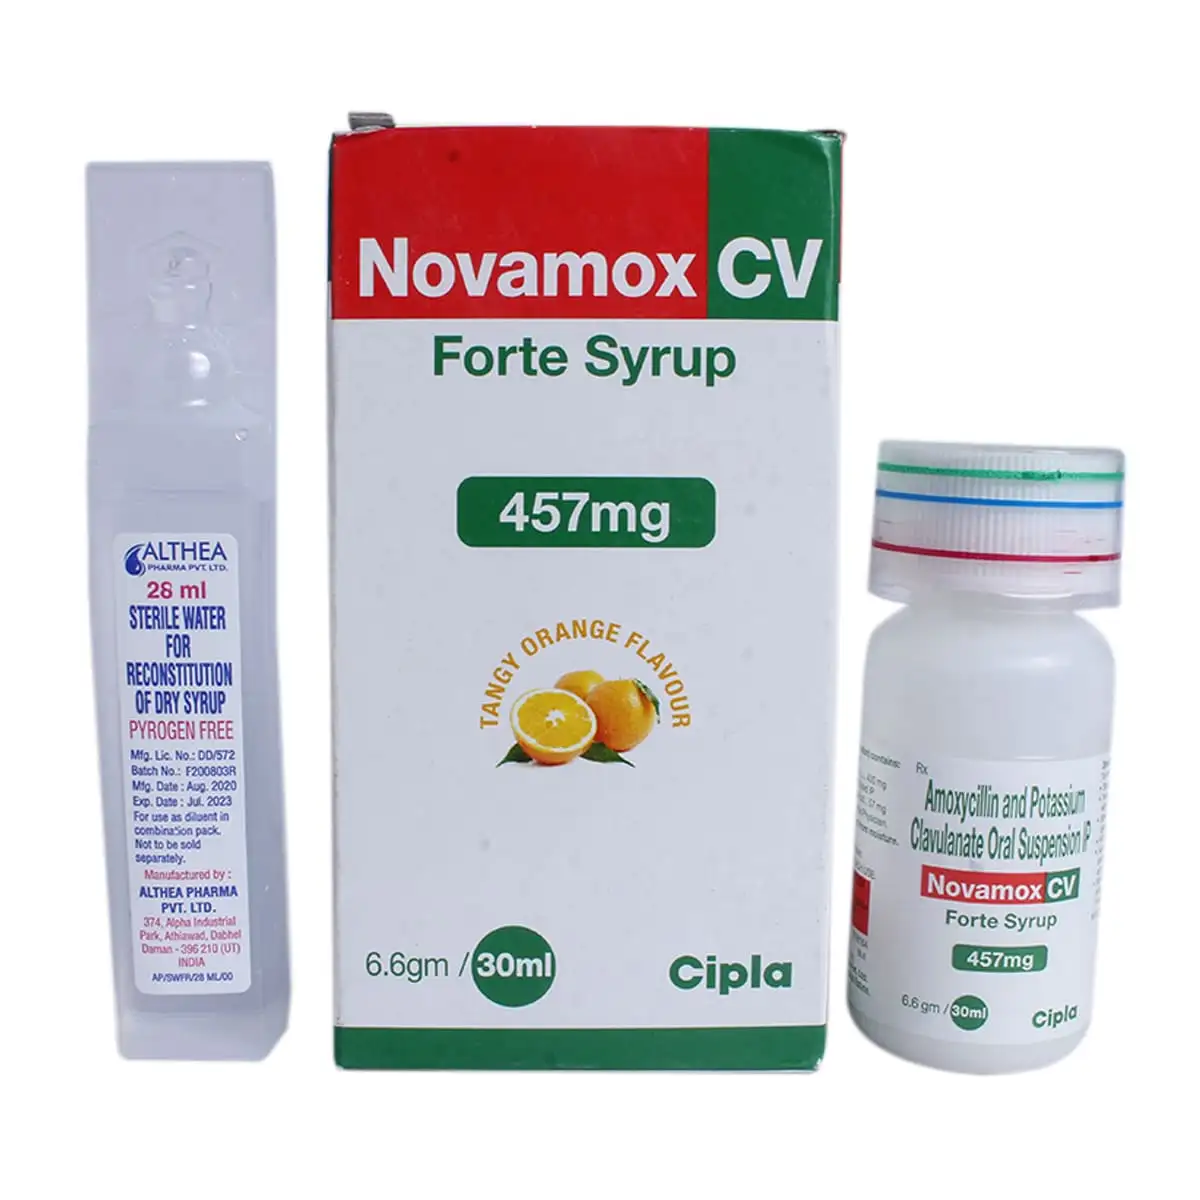 Novamox CV Forte Syrup